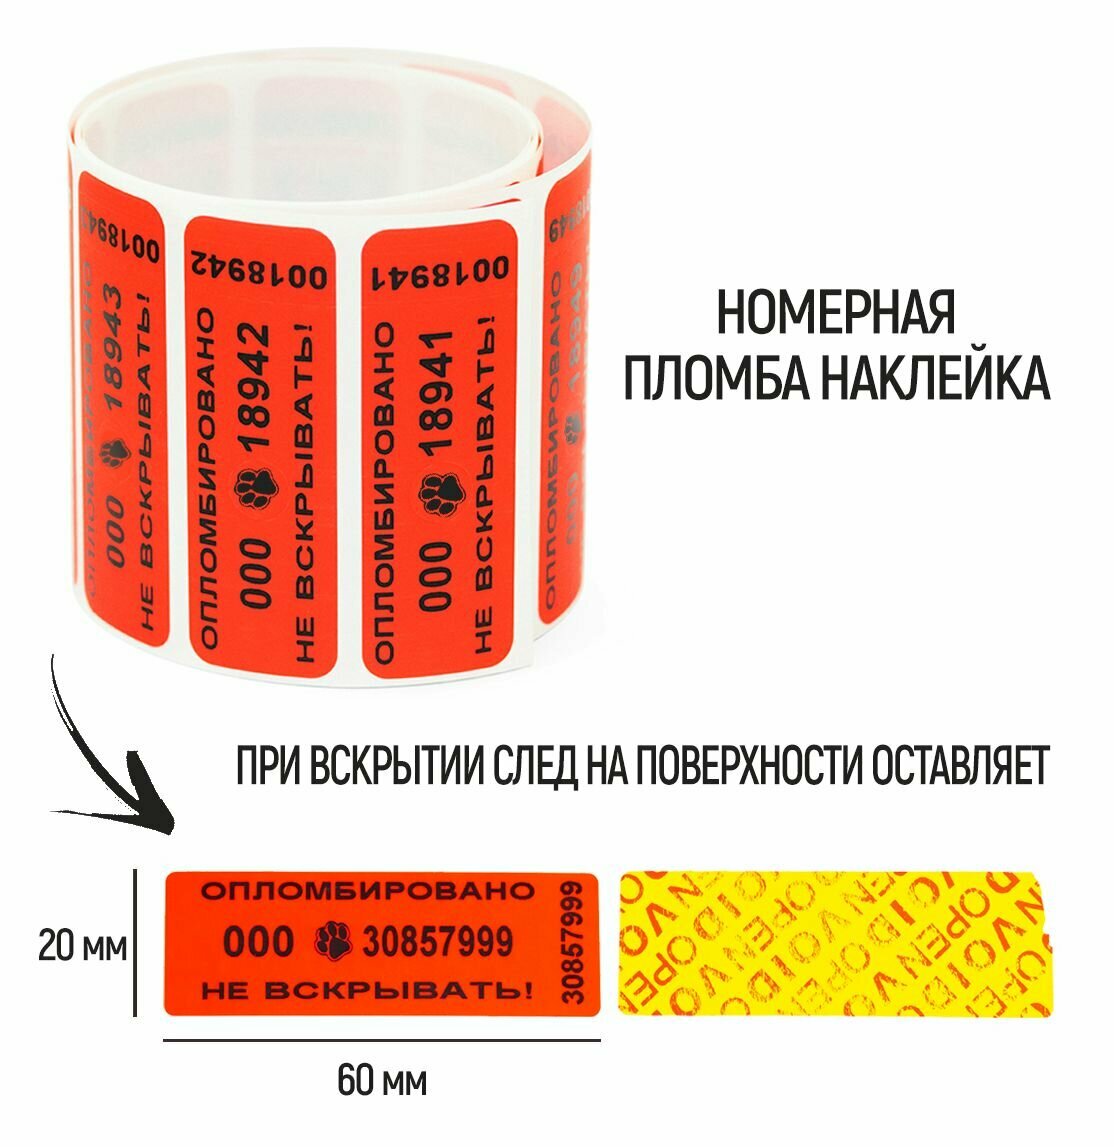 Пломбы наклейки 60 х 20 мм, красные, со следом (упаковка 100 штук)